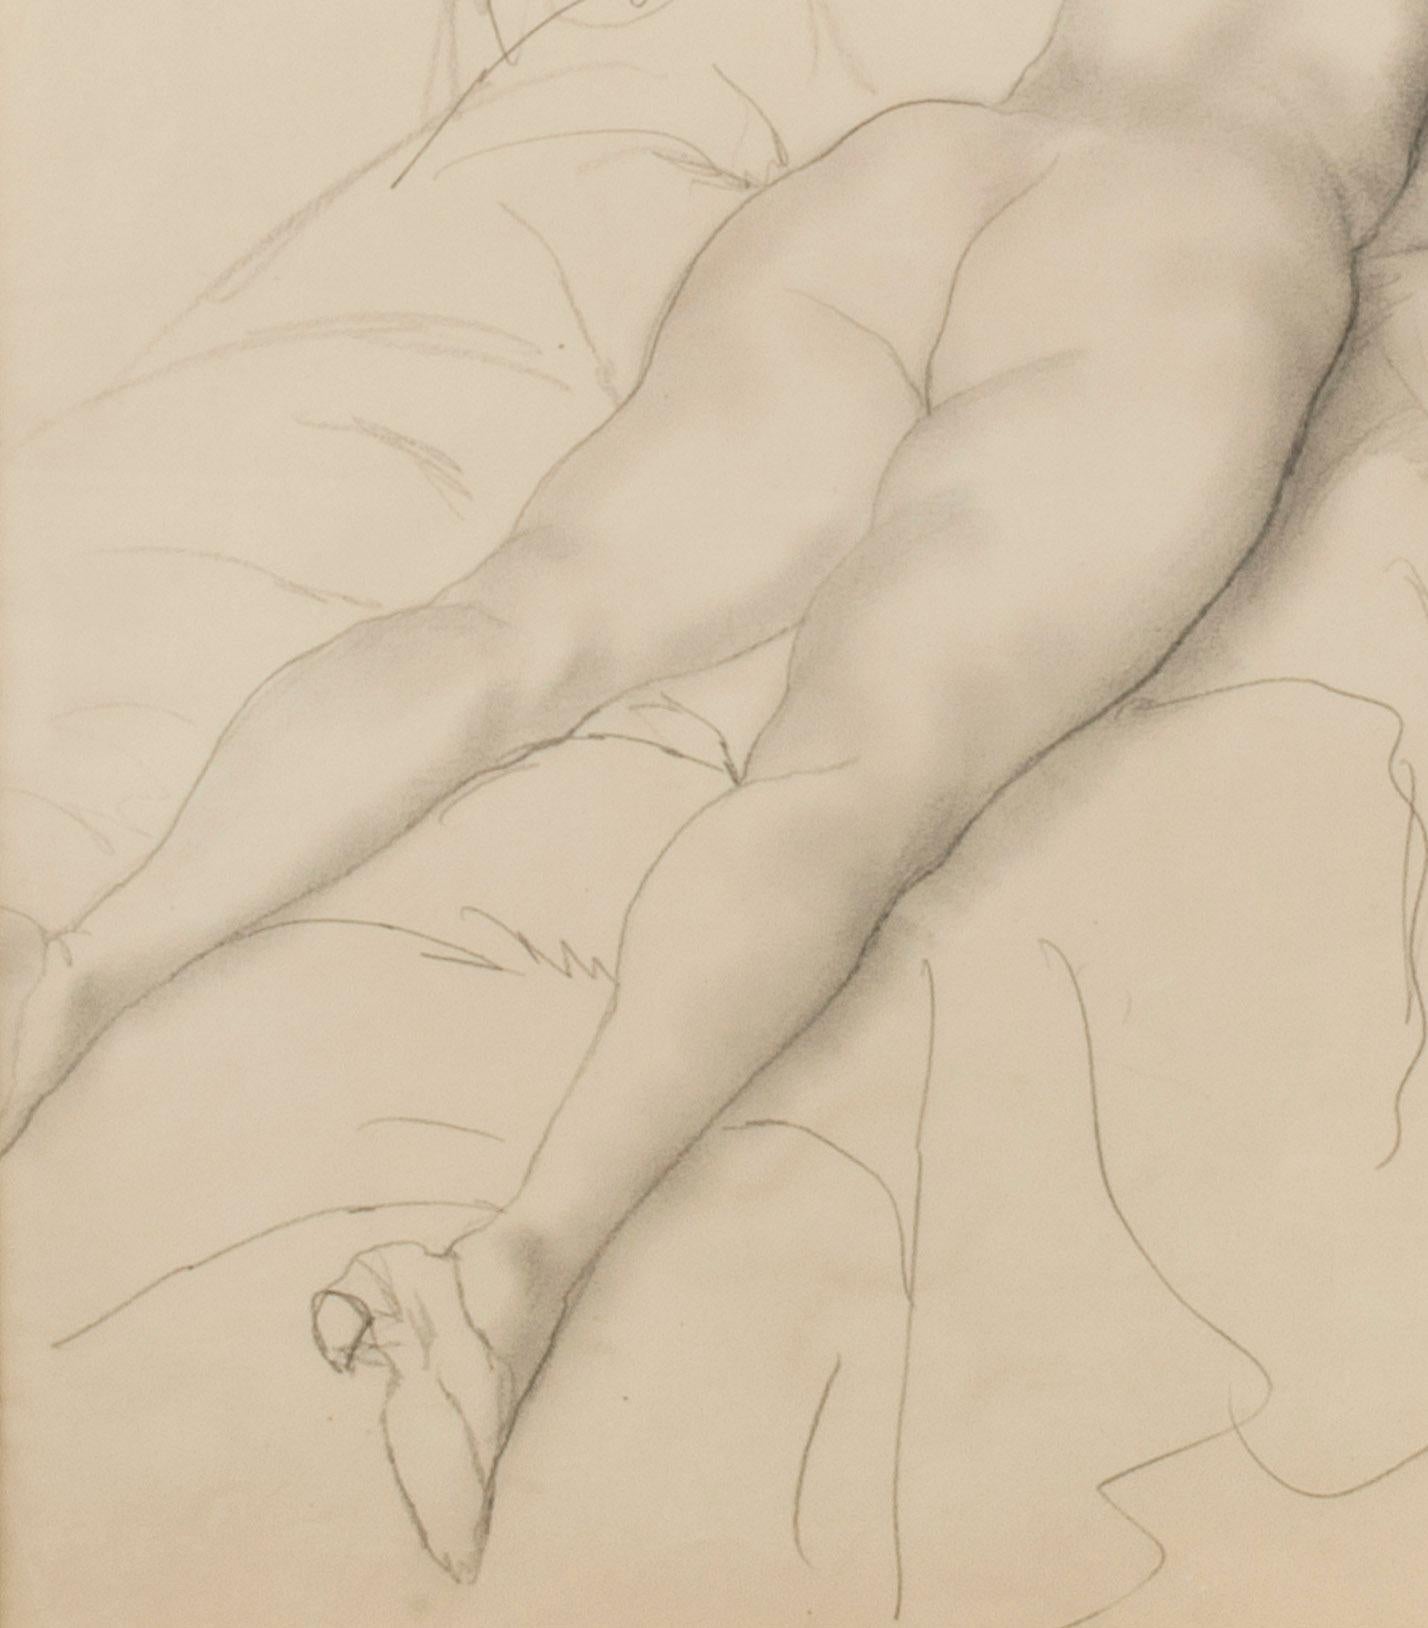 Reclining Female Nude - Beige Figurative Art by Emil Ganso